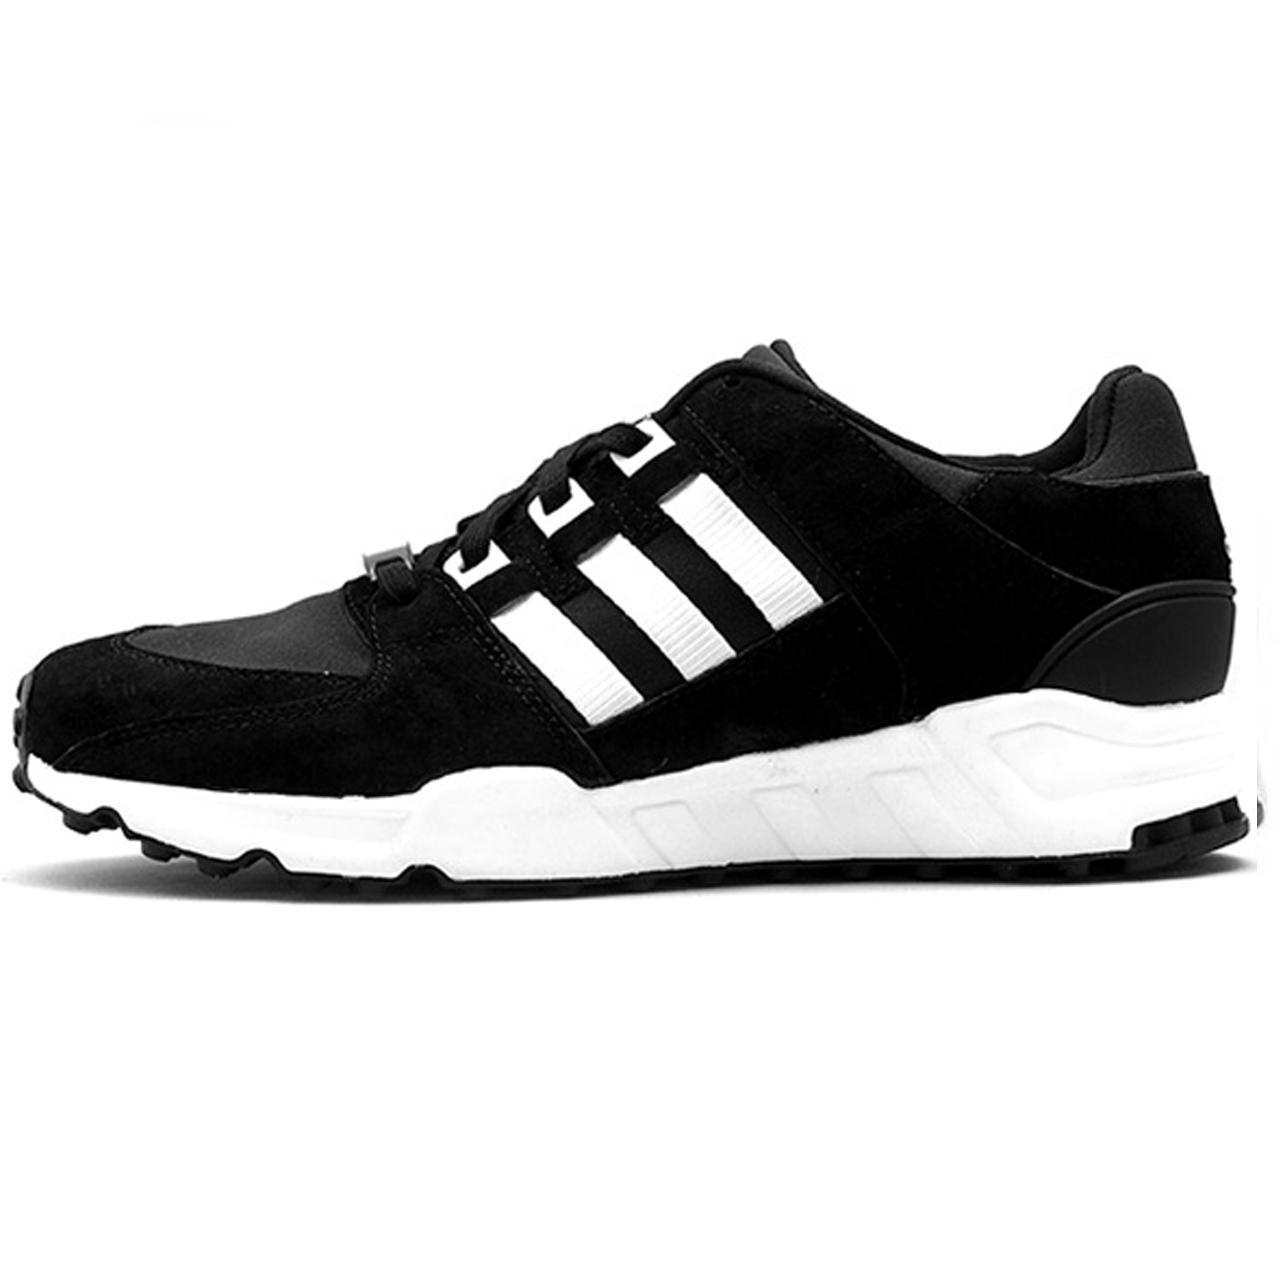  کفش مخصوص دویدن مردانه آدیداس مدل  EQT کد 8765-09R3547